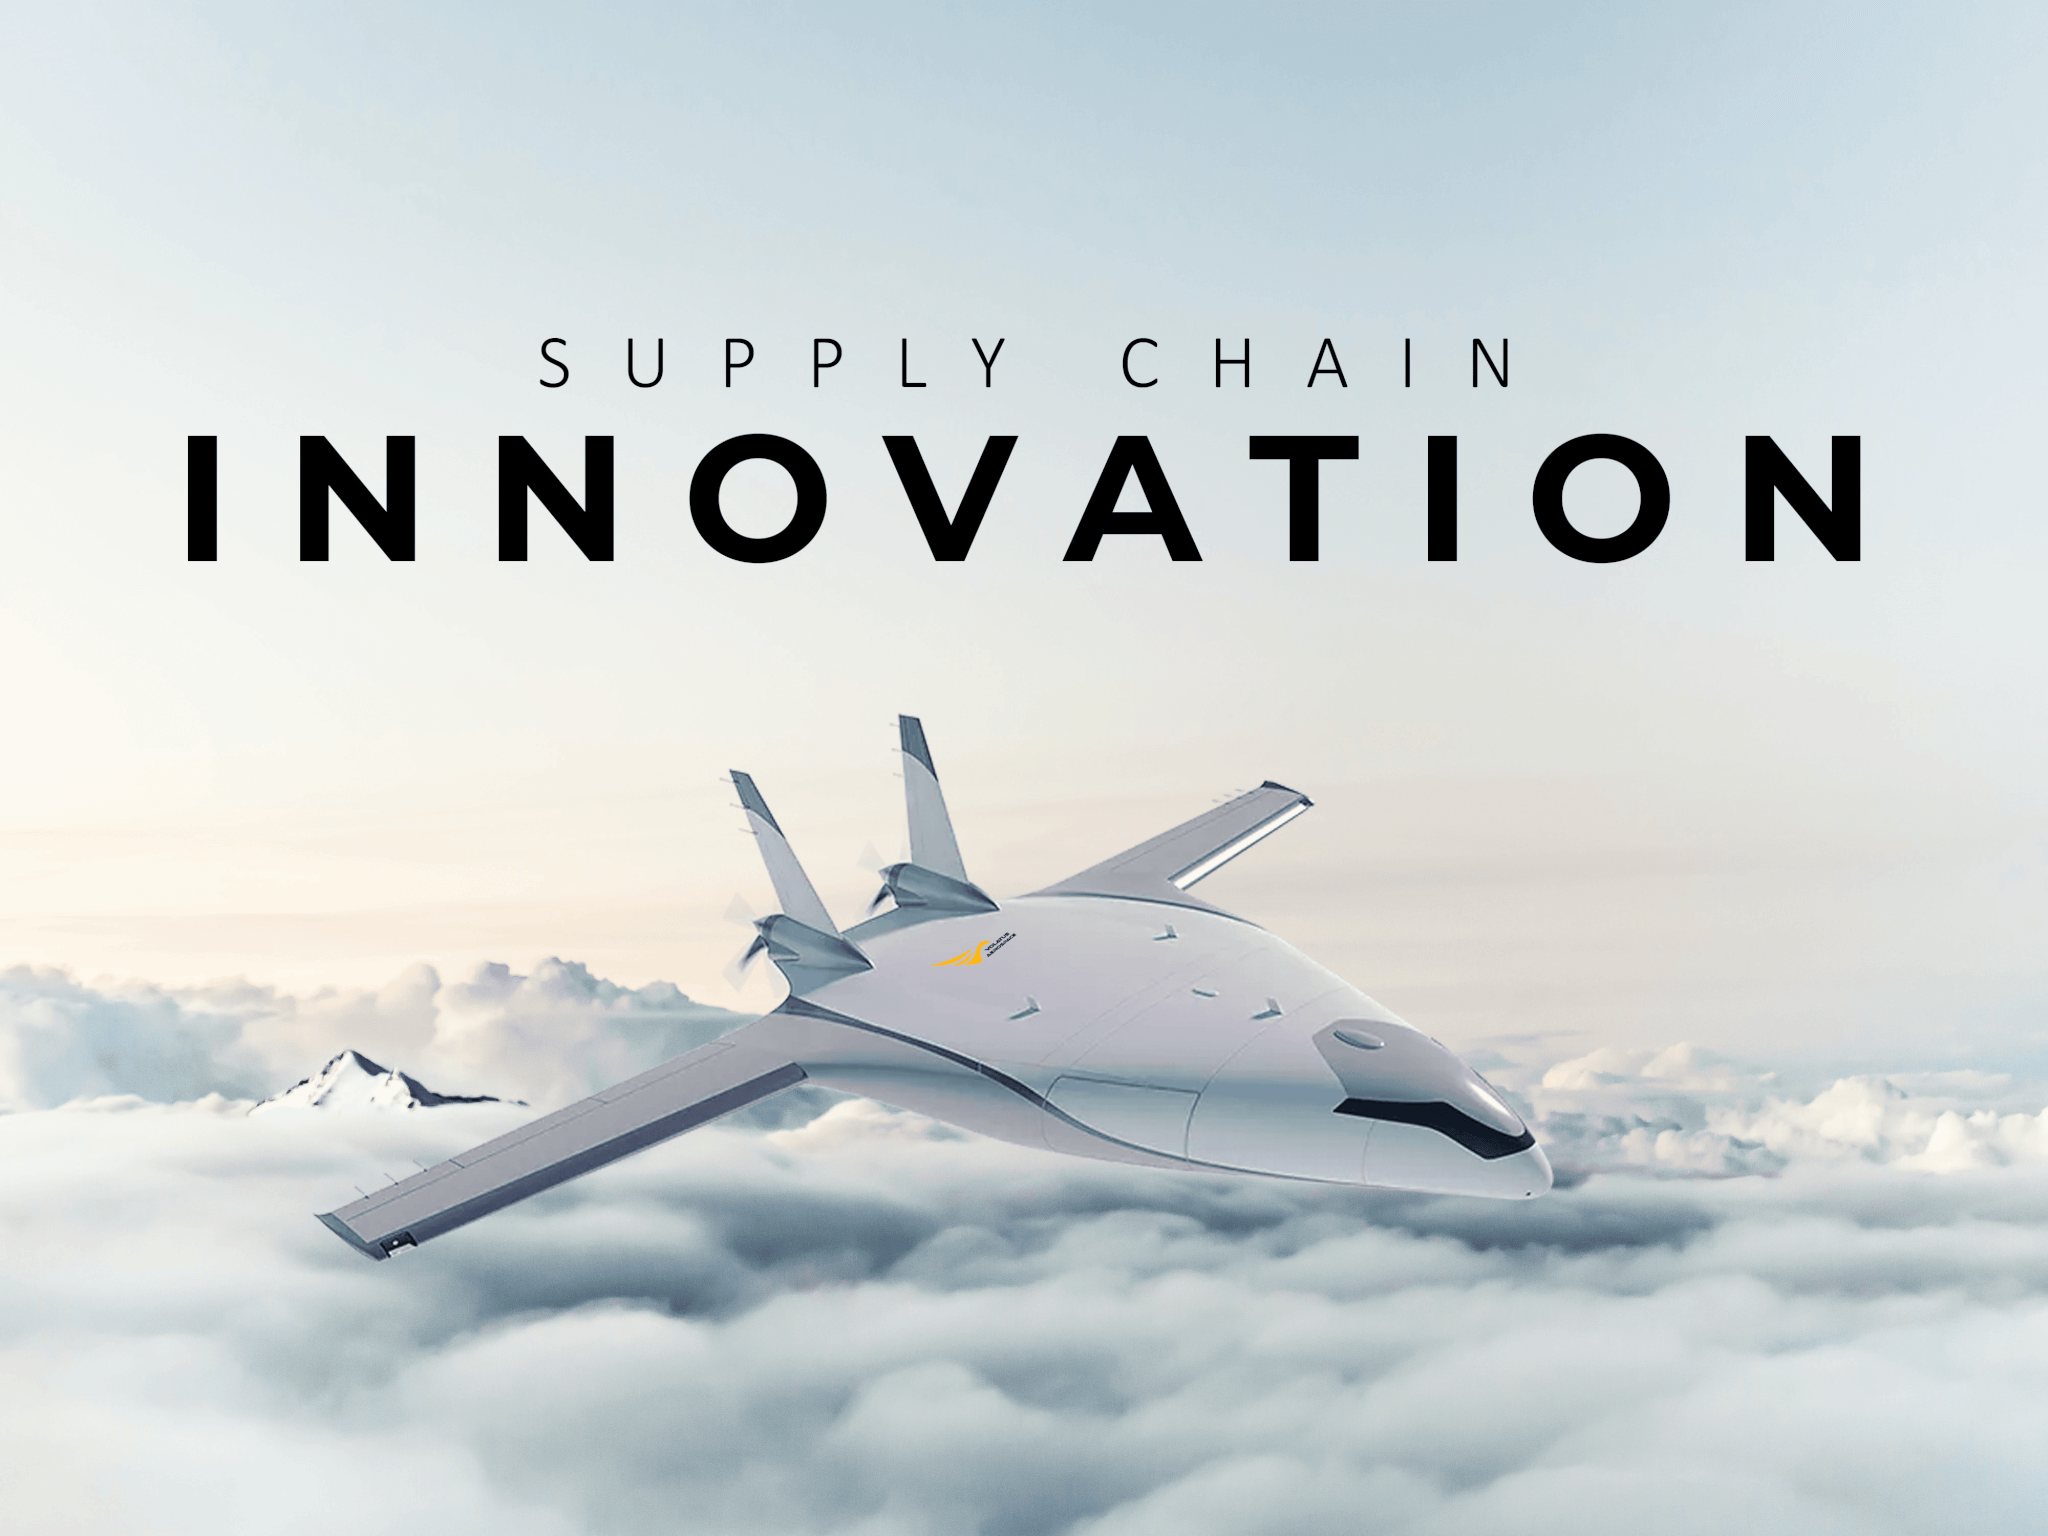 Avion autonome Natilus en vol : Innovation dans la chaîne d'approvisionnement